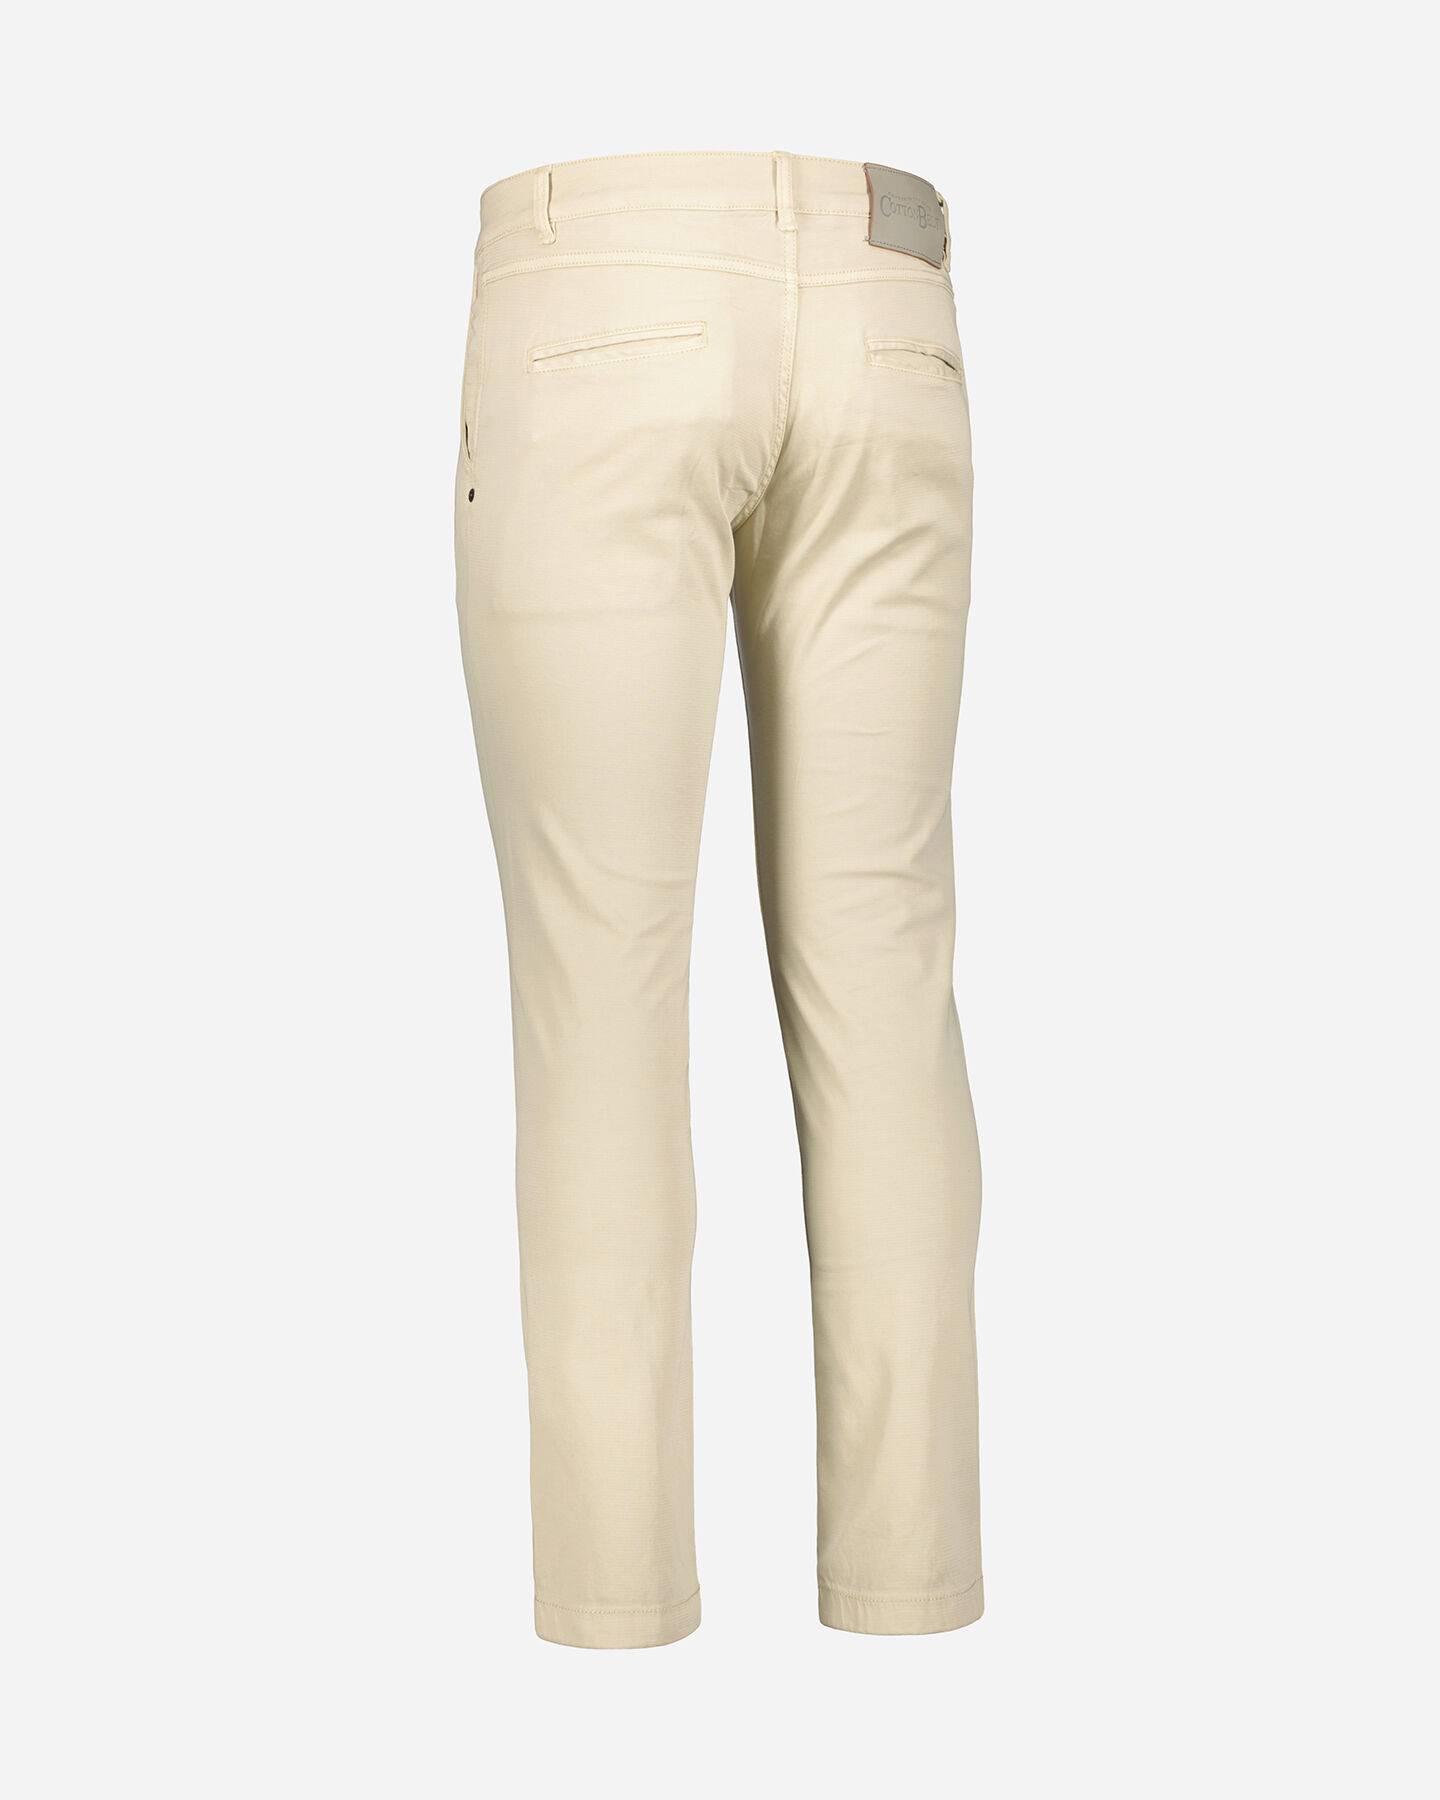  Pantalone COTTON BELT CHINO M S4115861|90|30 scatto 2